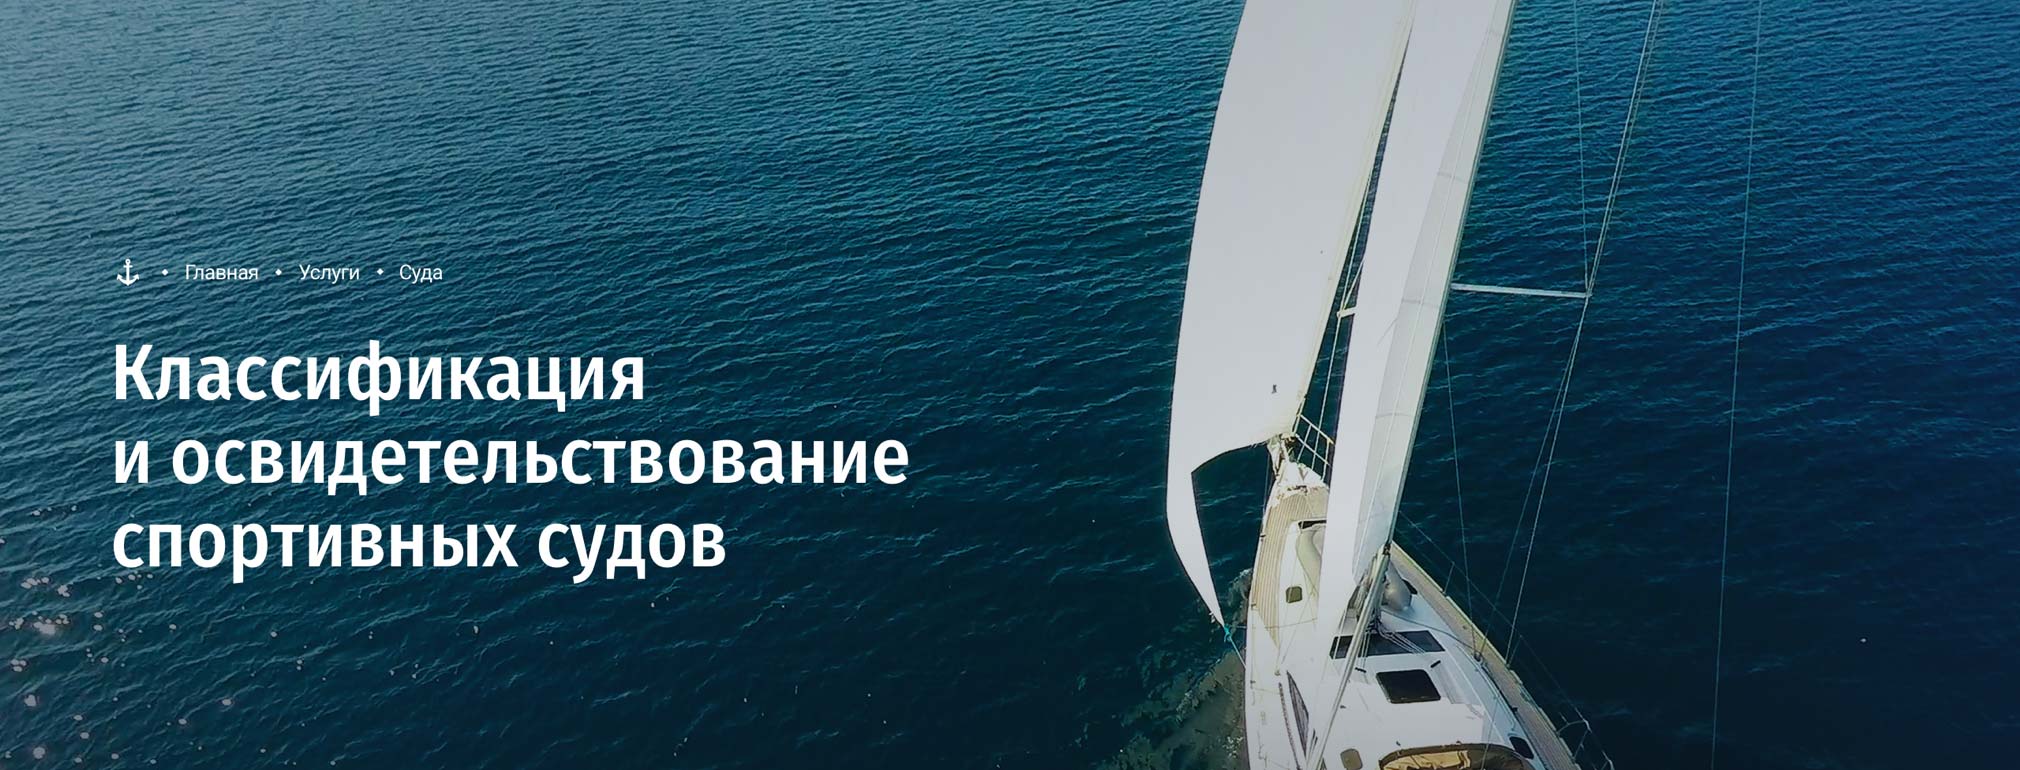 Официальный сайт российского регистра судоходства